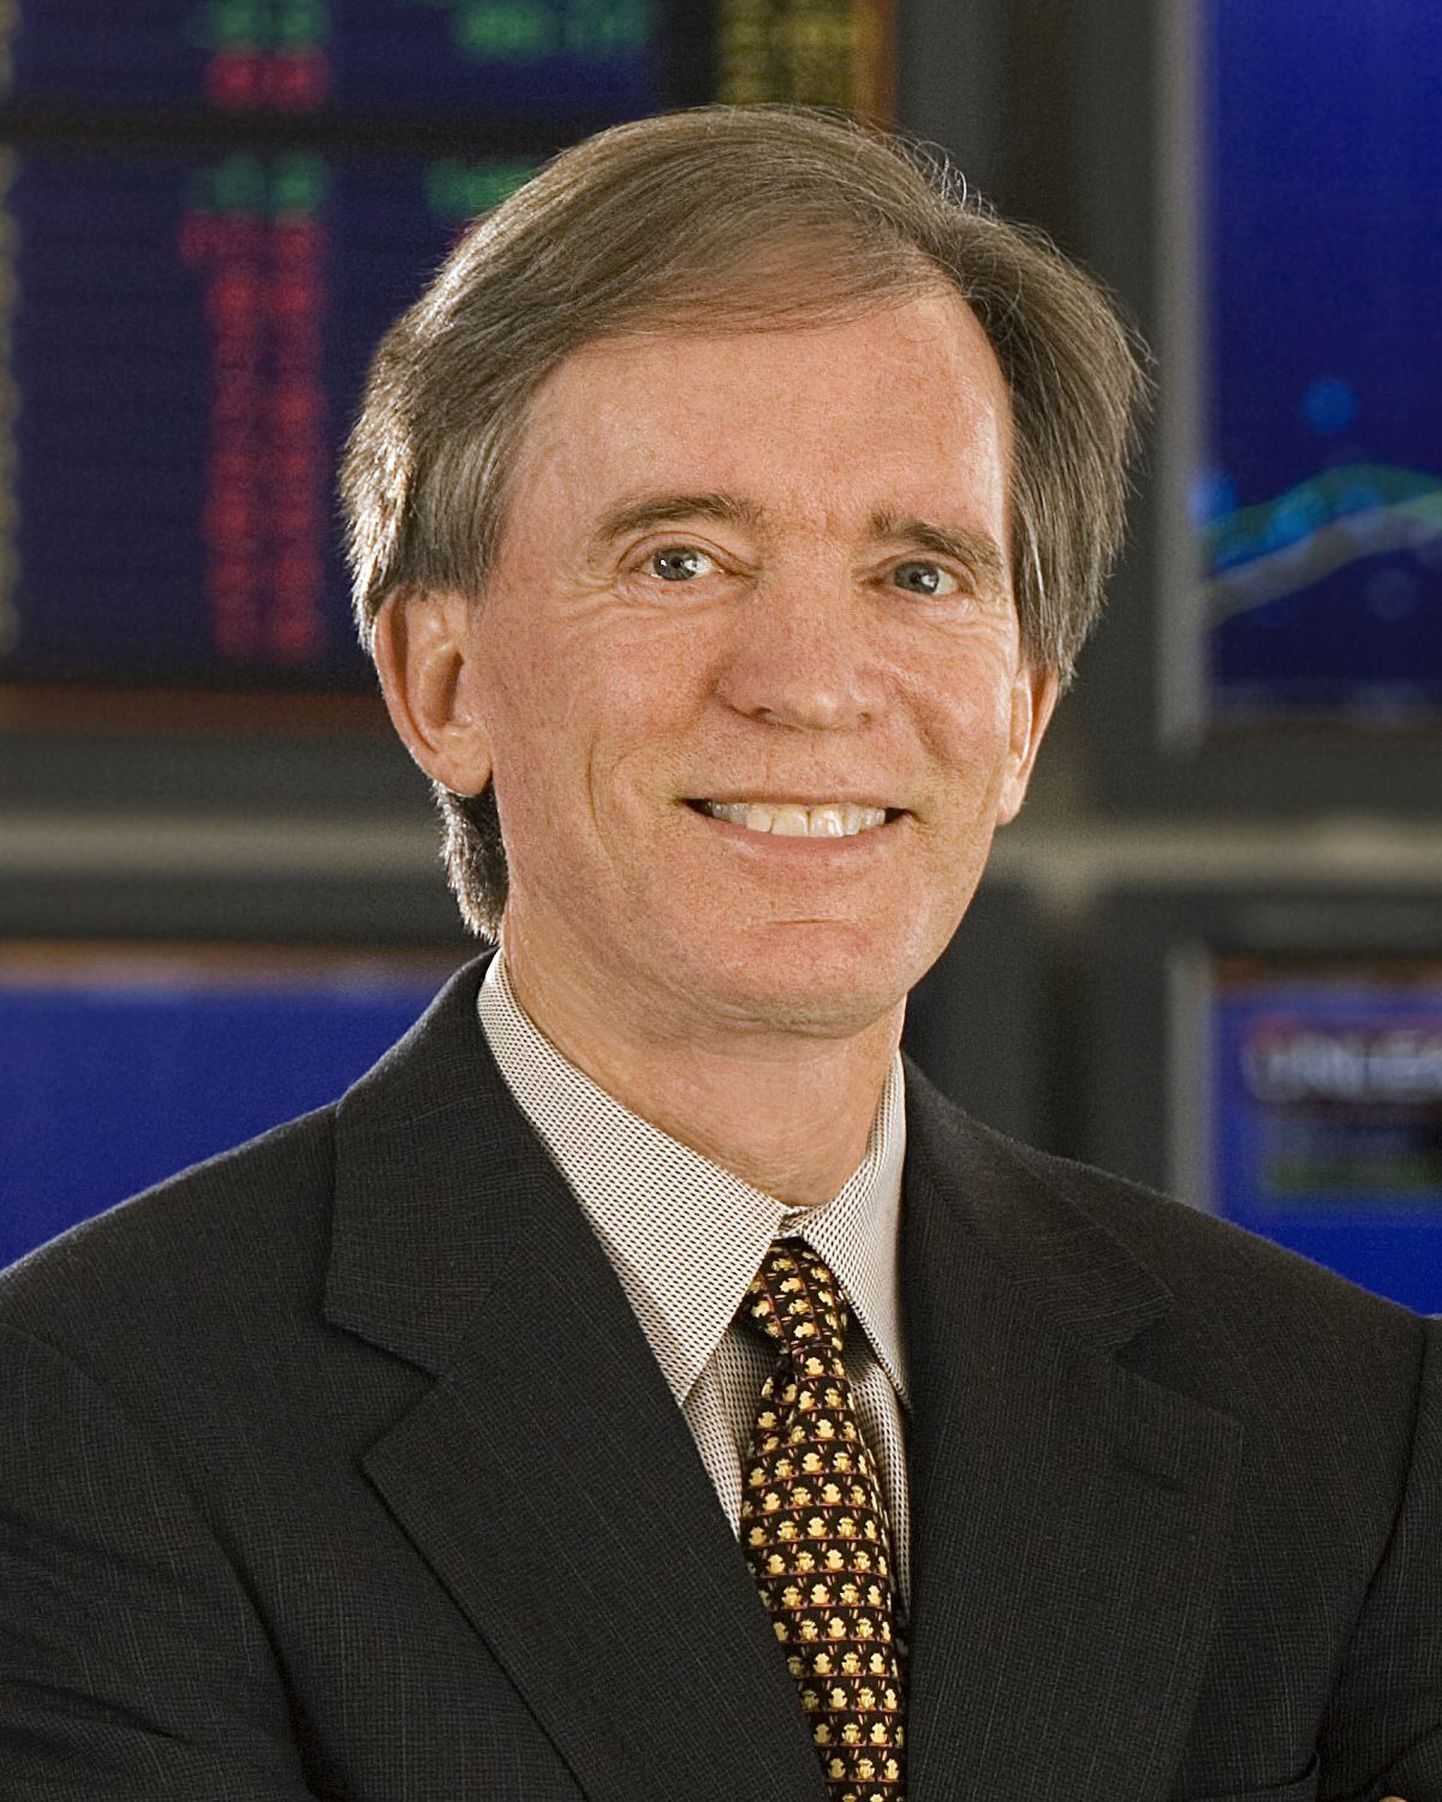 Maailma suurima võlakirjafondi PIMCO kaasjuht Bill Gross.